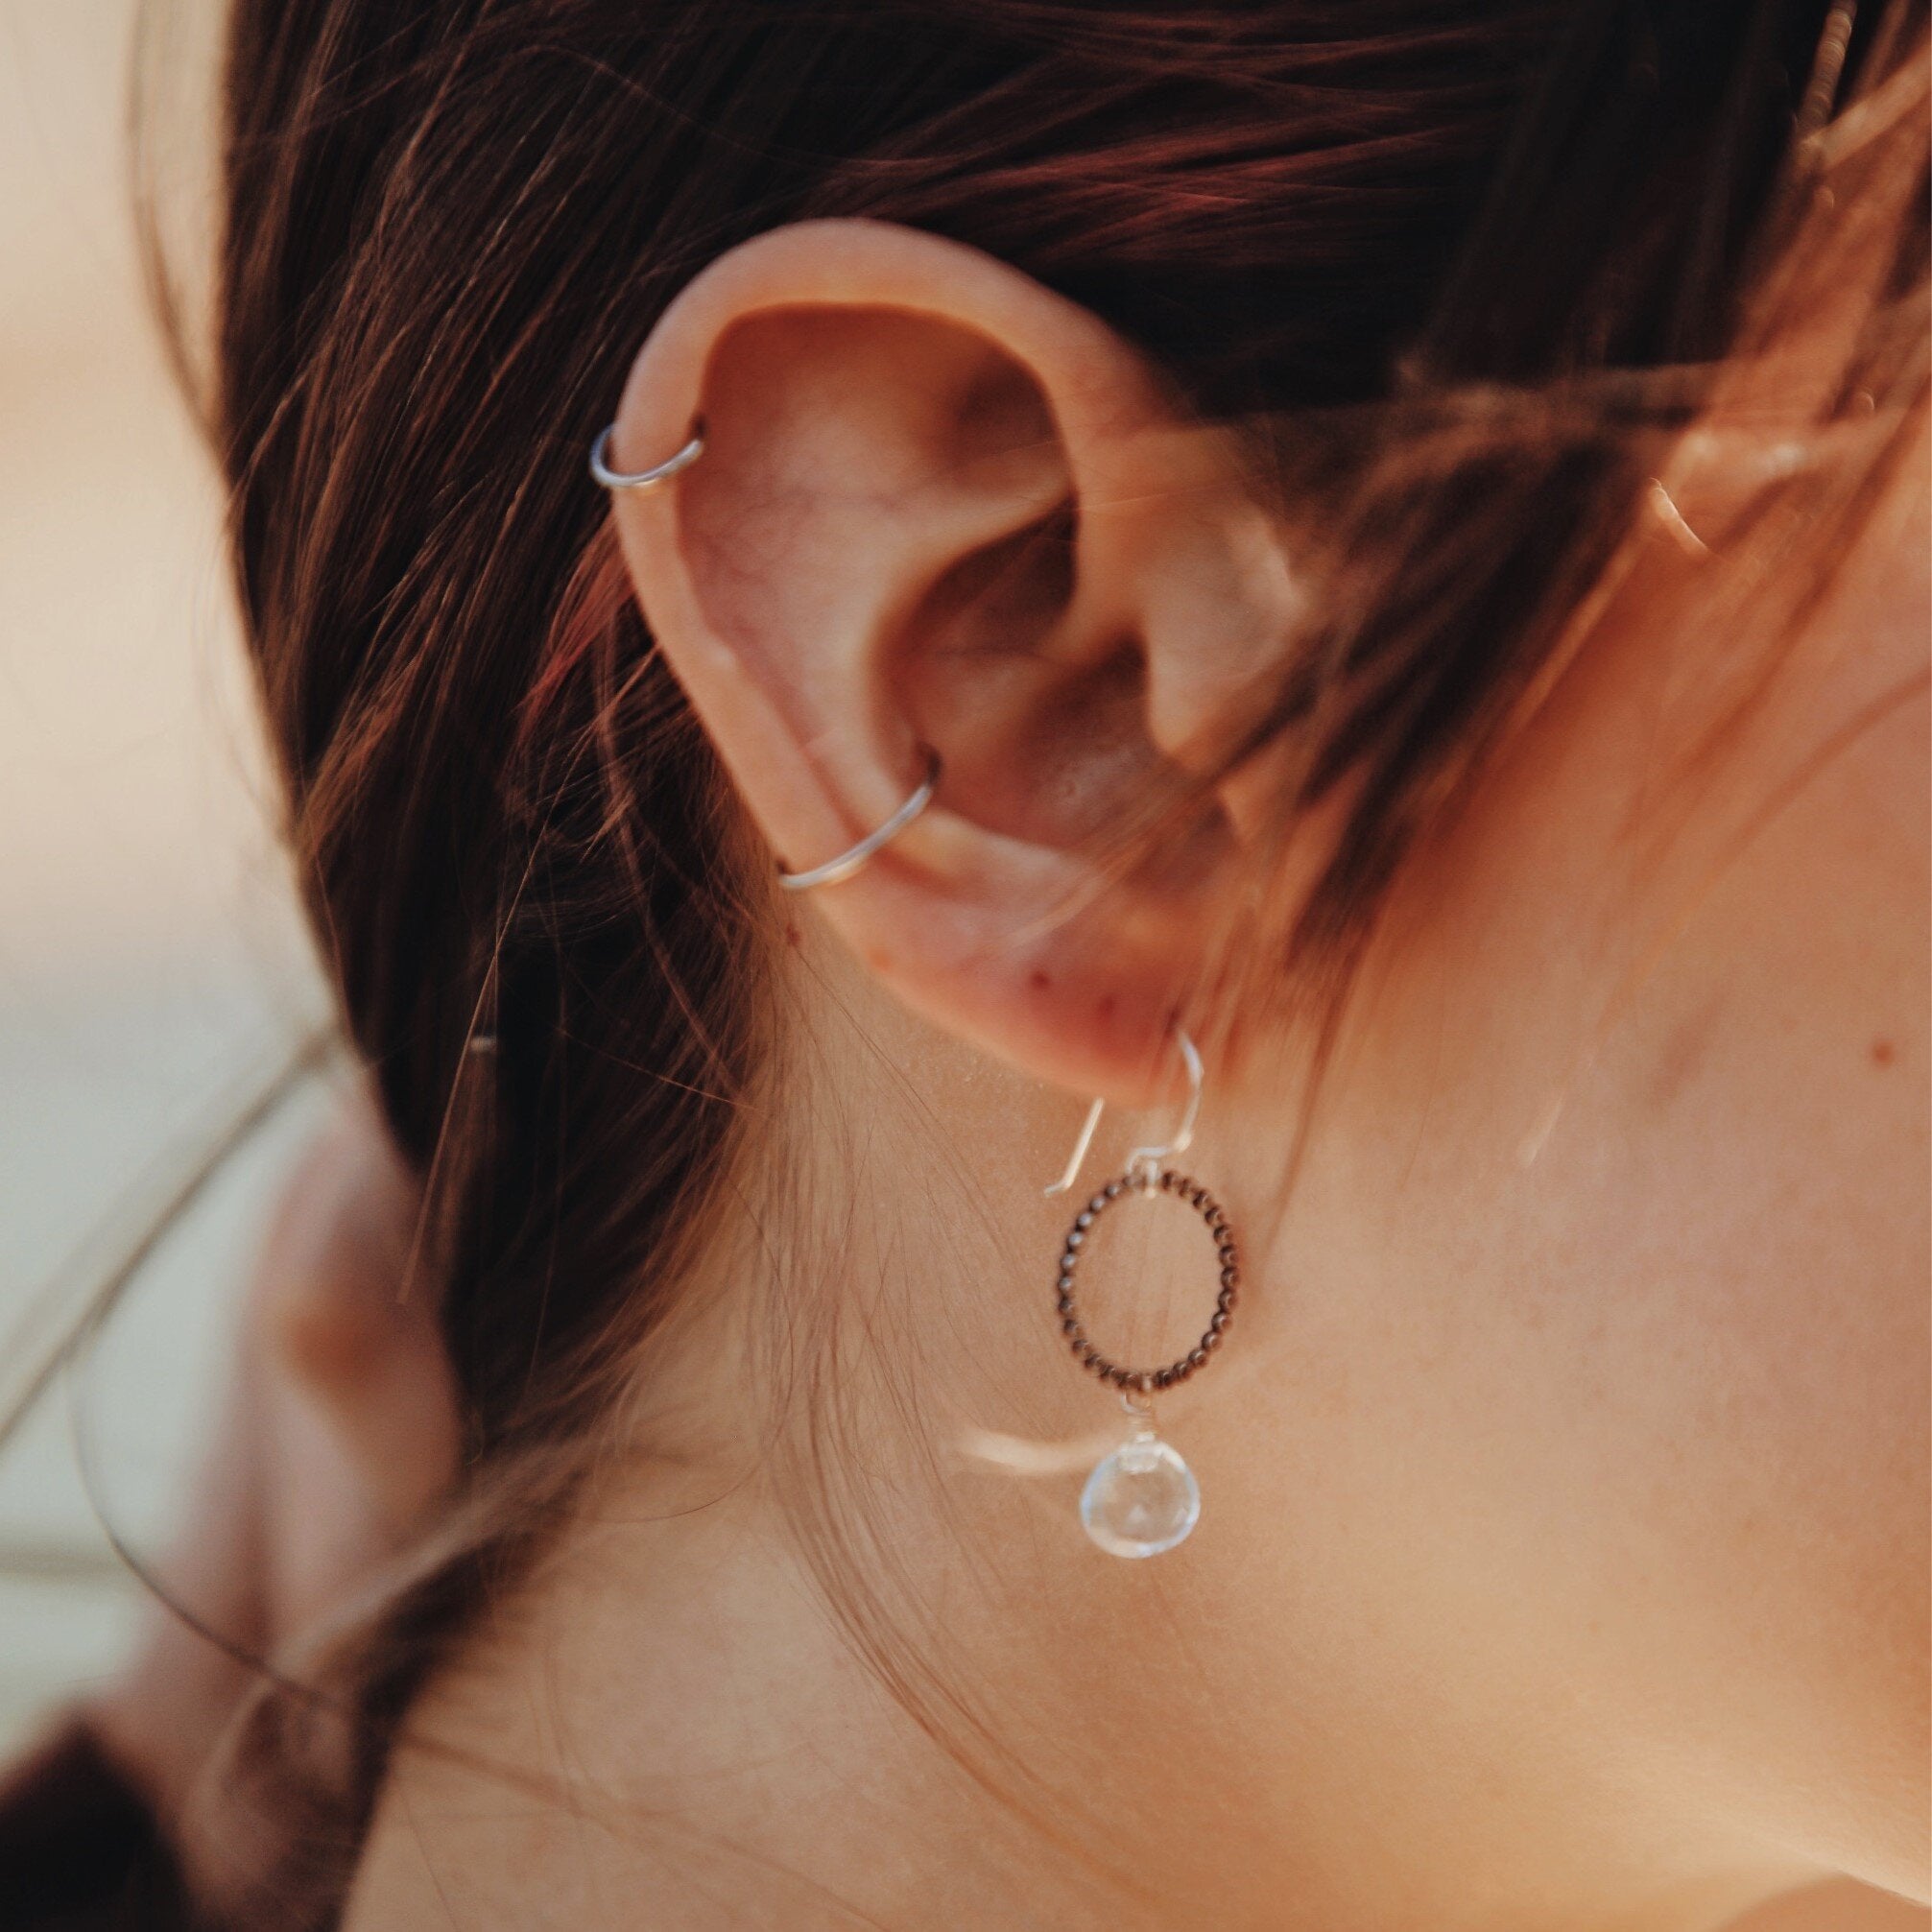 Clearwater Earrings